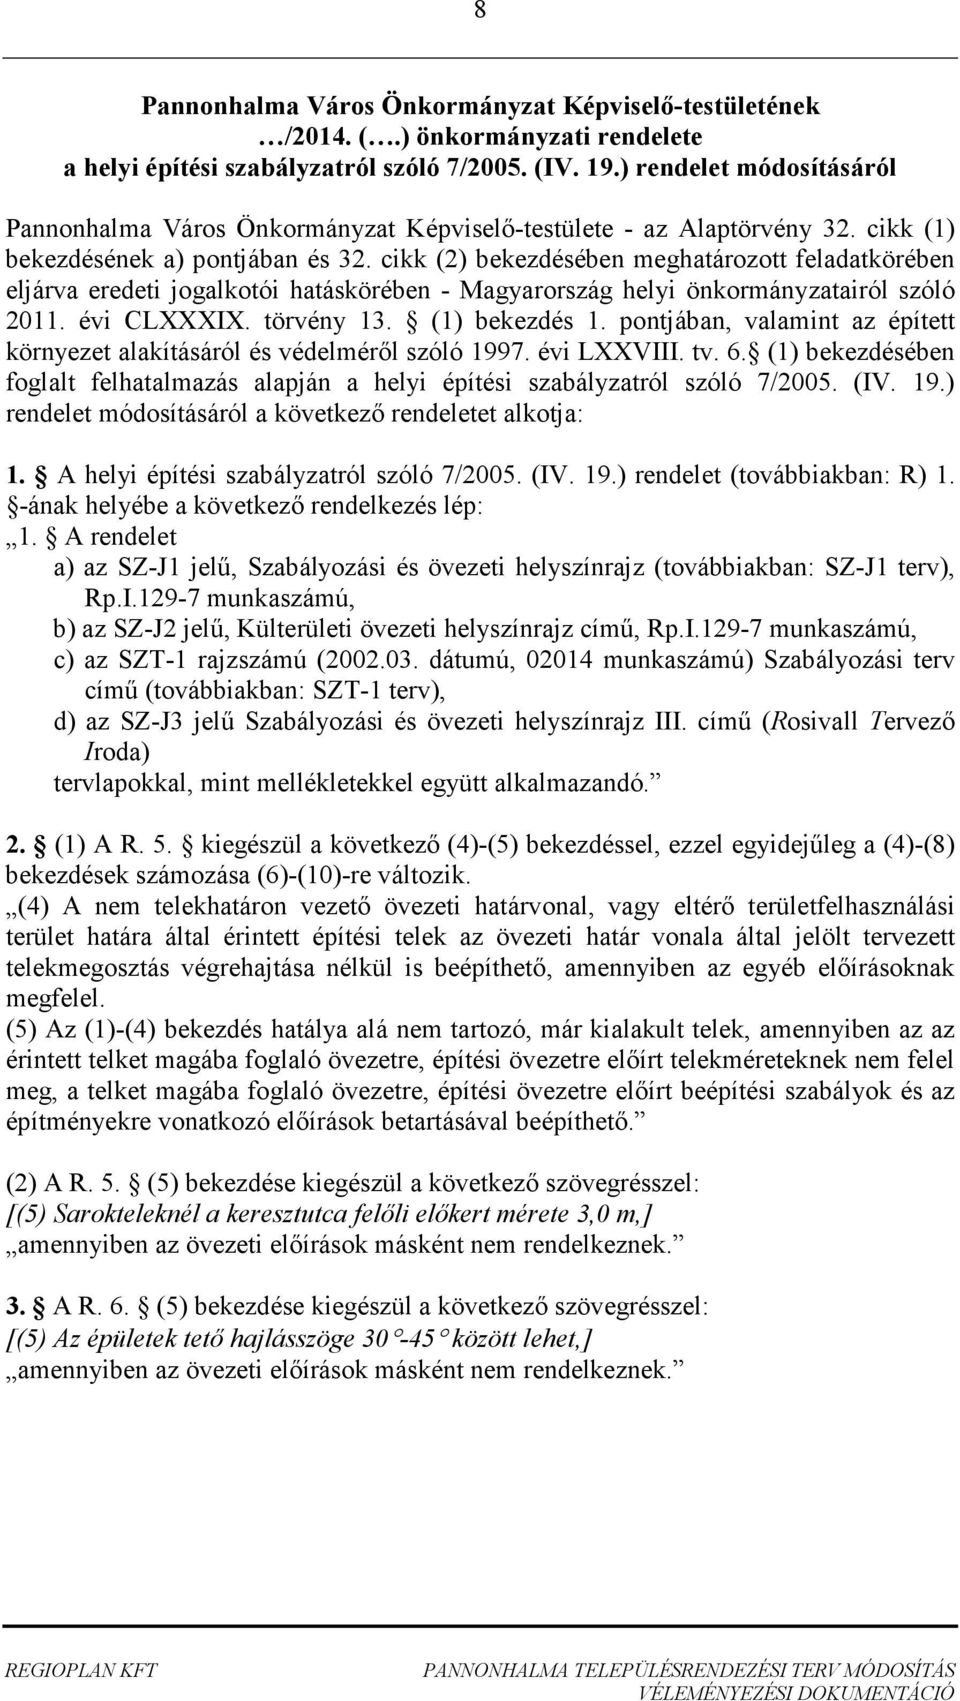 cikk (2) bekezdésében meghatározott feladatkörében eljárva eredeti jogalkotói hatáskörében - Magyarország helyi önkormányzatairól szóló 2011. évi CLXXXIX. törvény 13. (1) bekezdés 1.